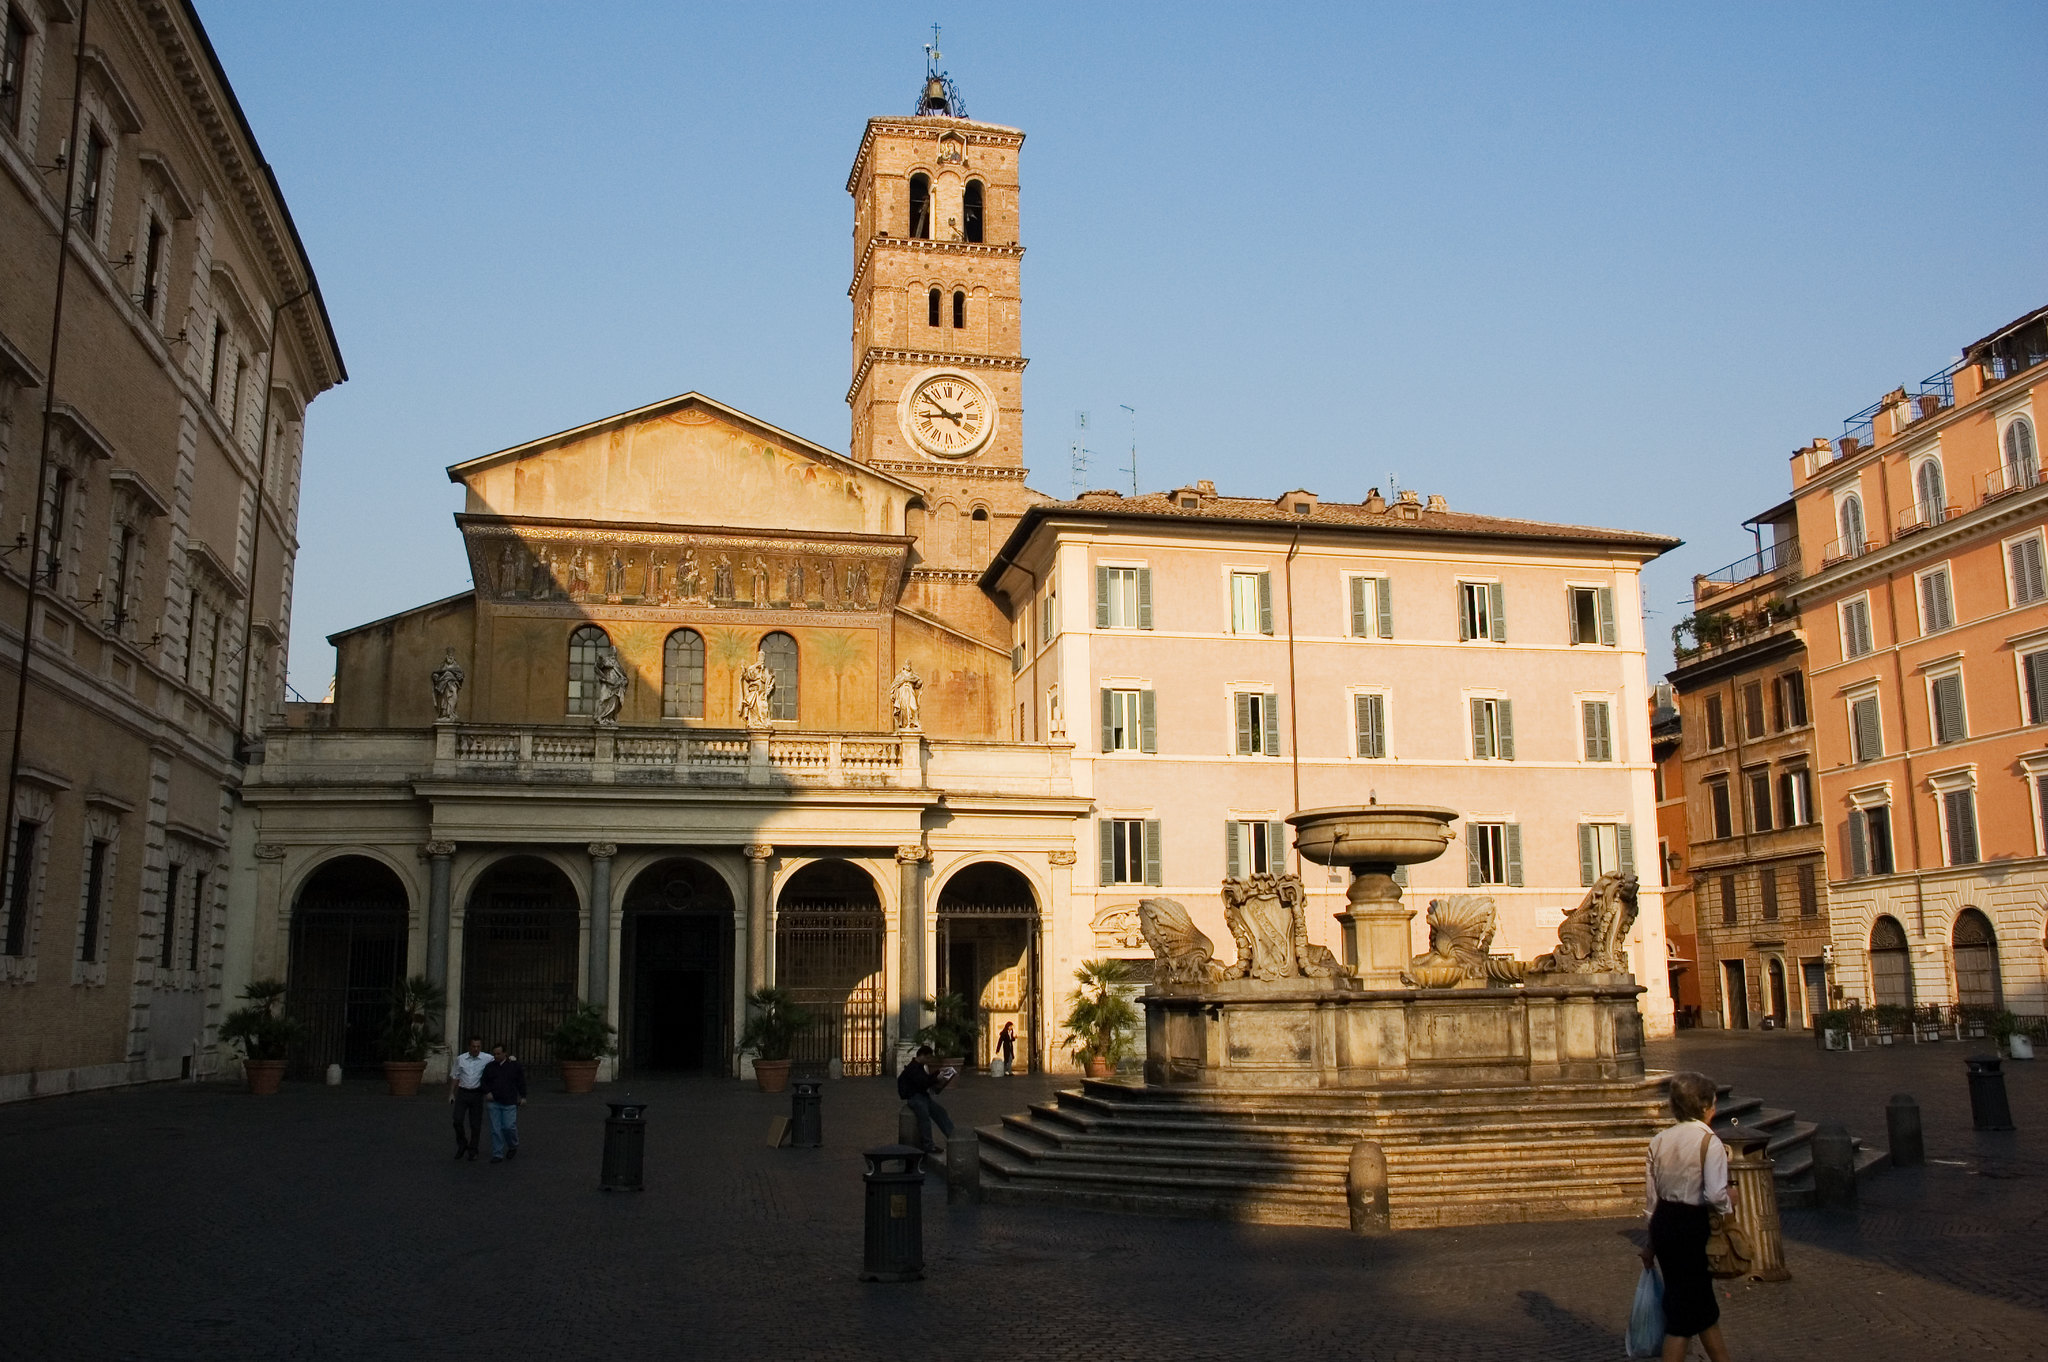 principali chiese romaniche in italia